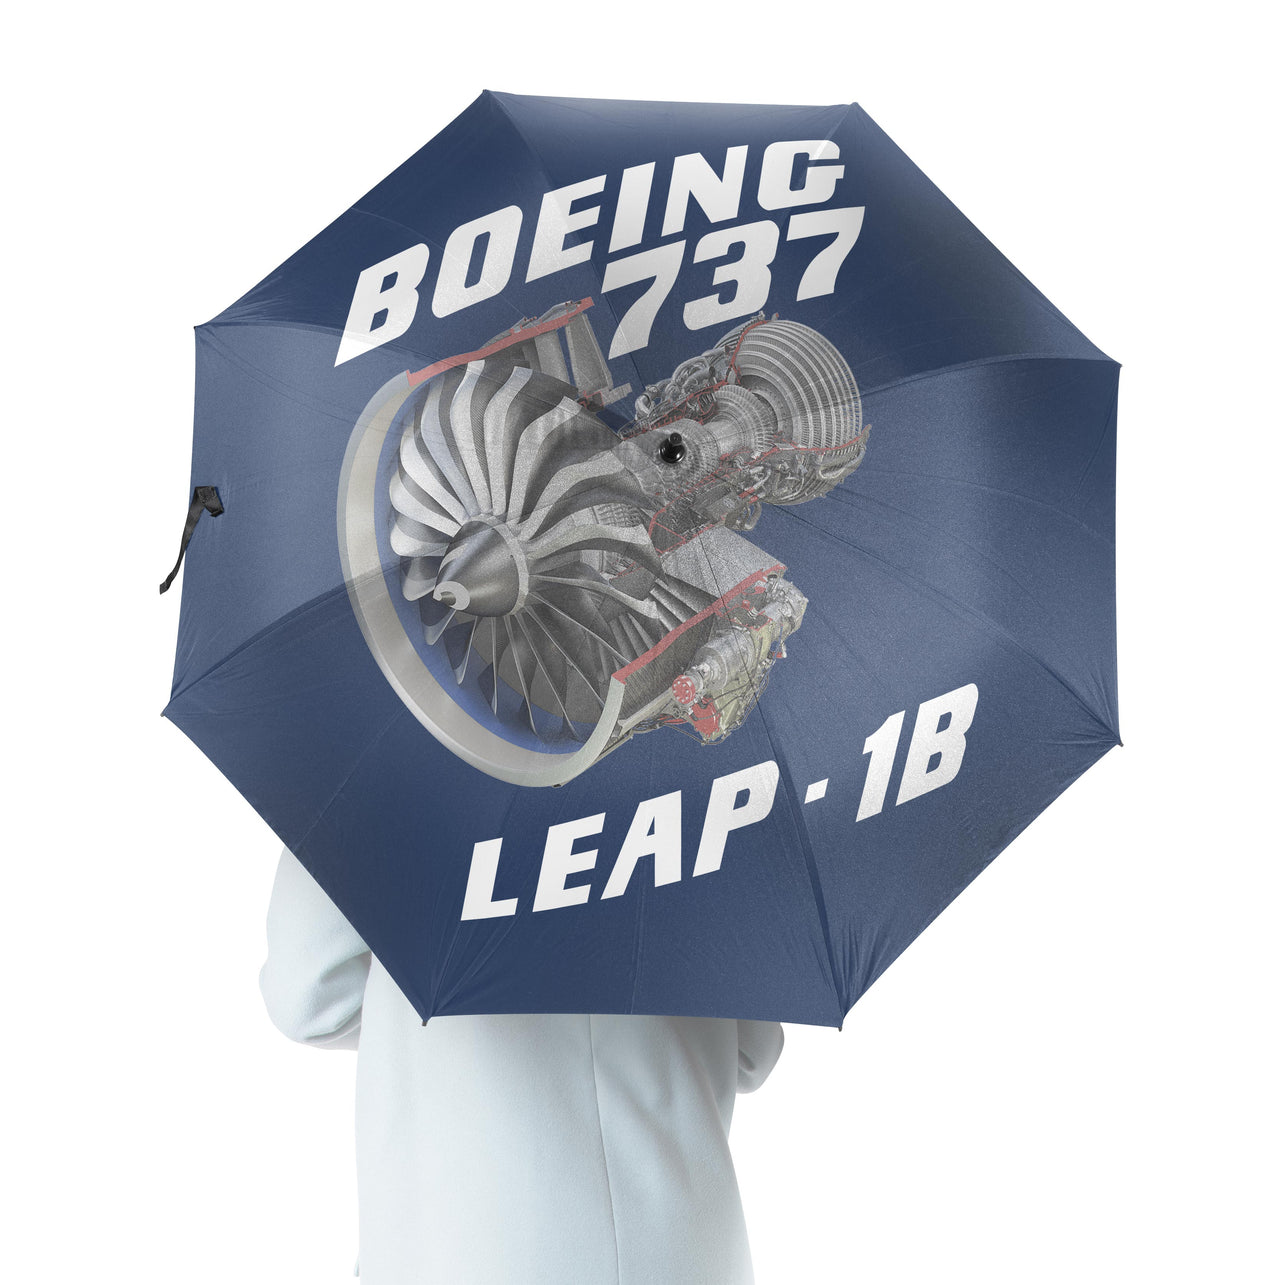 Boeing 737 & Leap 1B Designed Umbrella